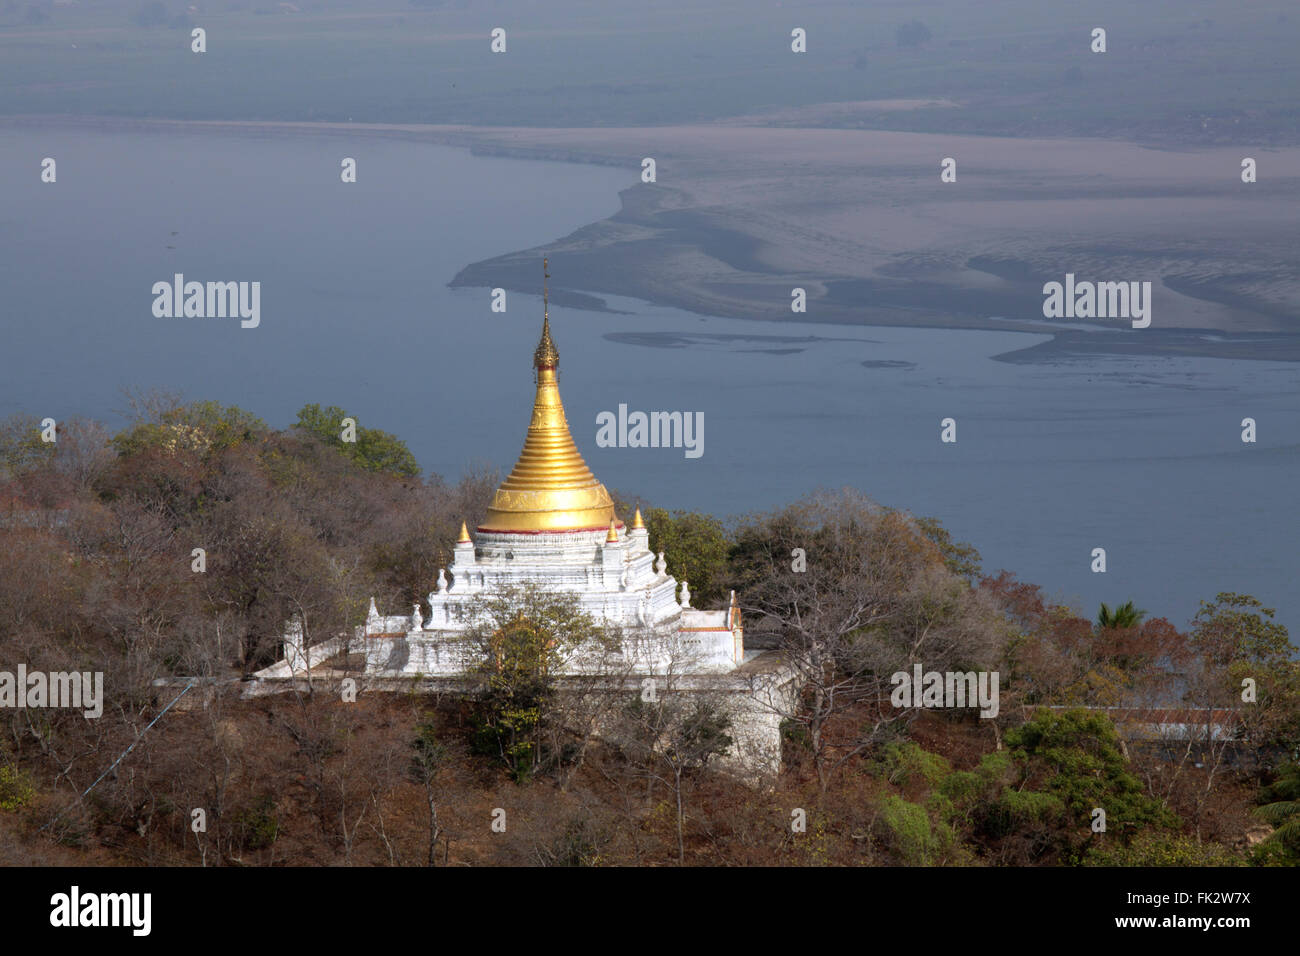 En Asia, el sudeste de Asia, Myanmar, Mawlamyine, vista sobre el Thanlwin) río Salween (con una pagoda (paya) en primer plano Foto de stock